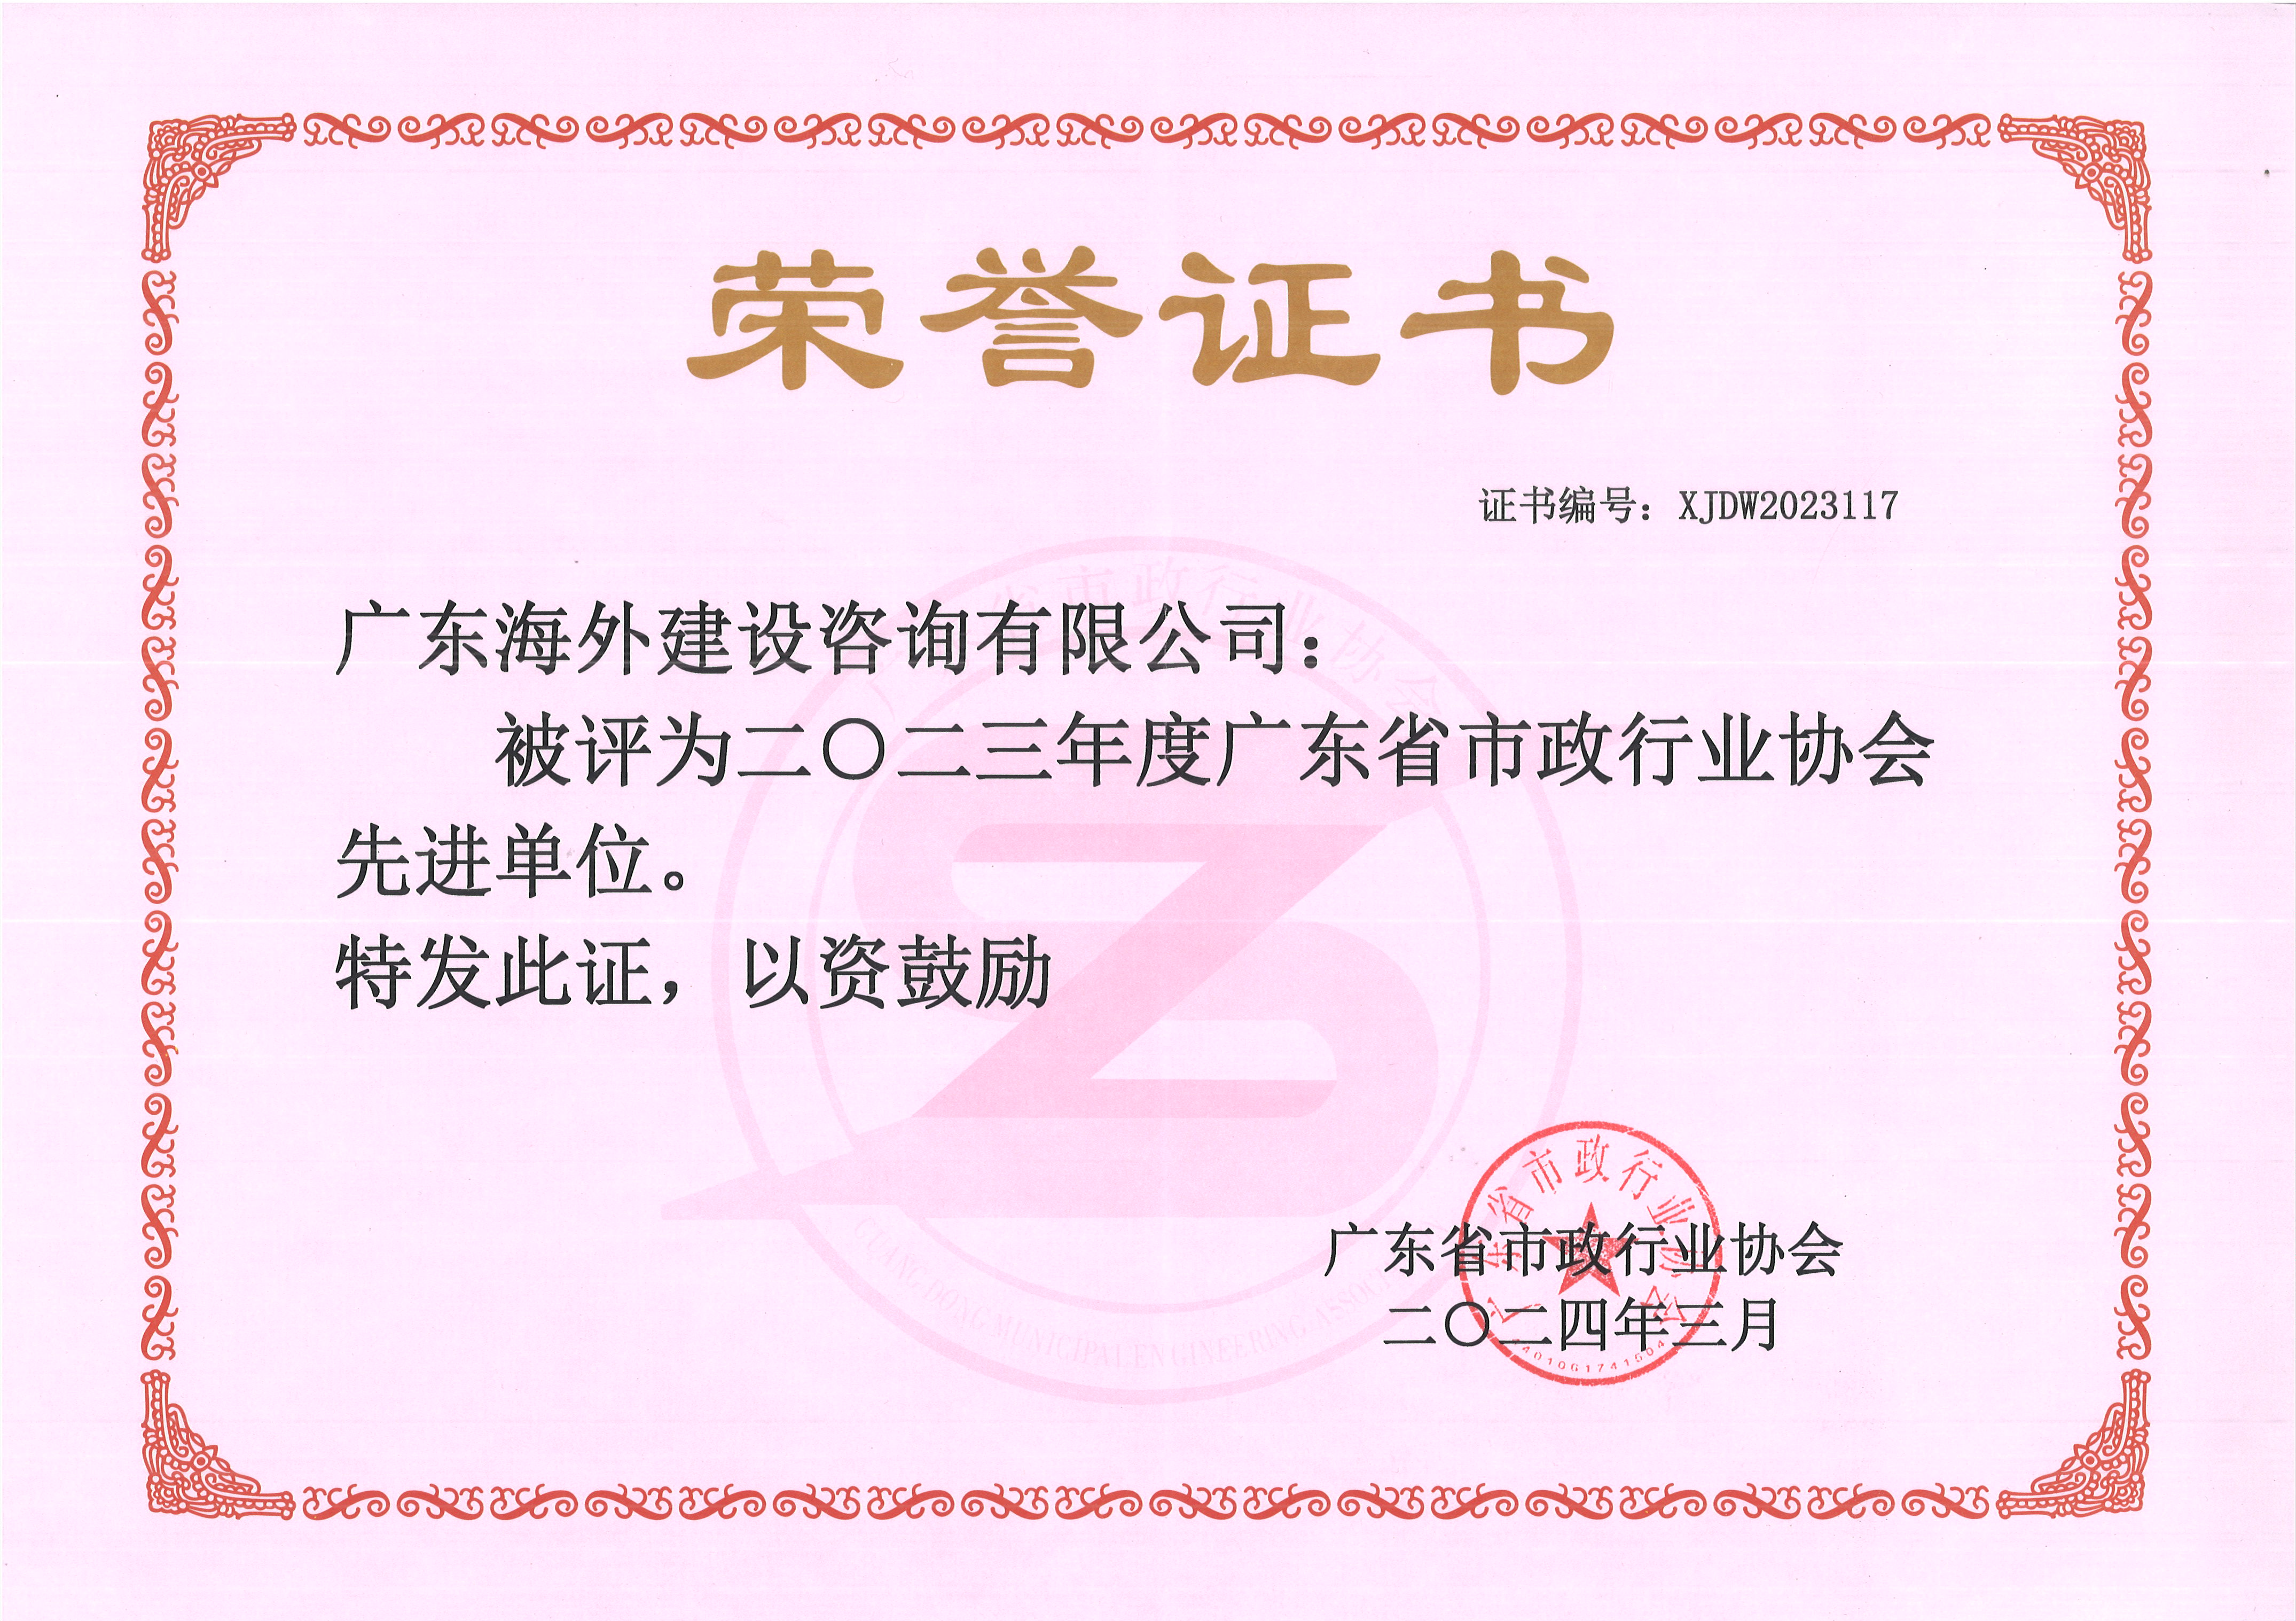 热烈祝贺我司被评为“2023年度广东省市政行业协会先进单位”!